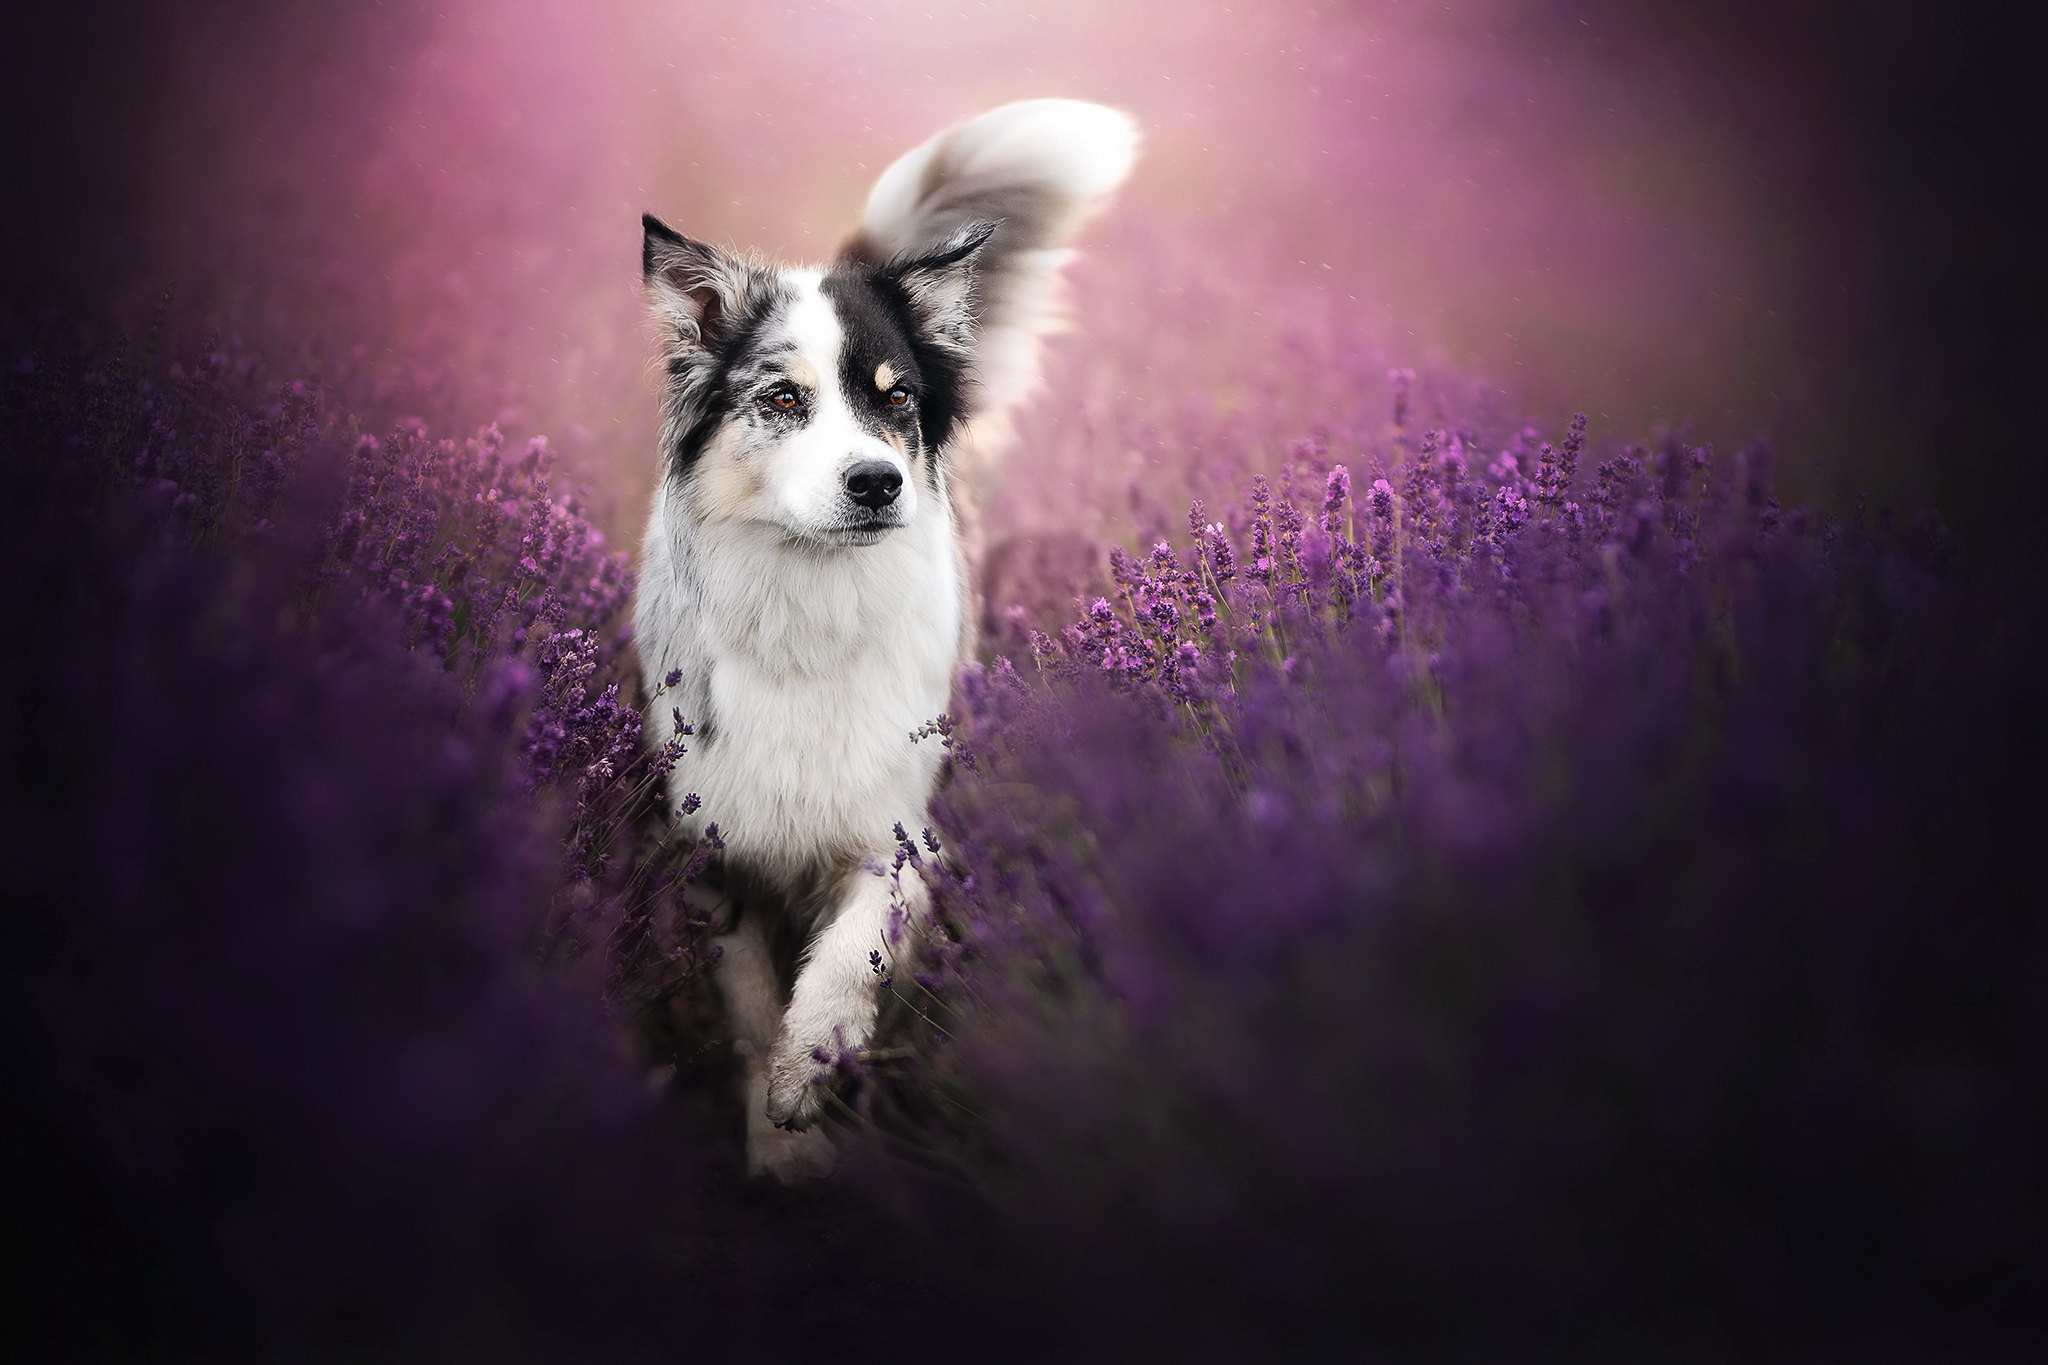 Descarga gratuita de fondo de pantalla para móvil de Animales, Perros, Perro, Lavanda, Flor Purpura.